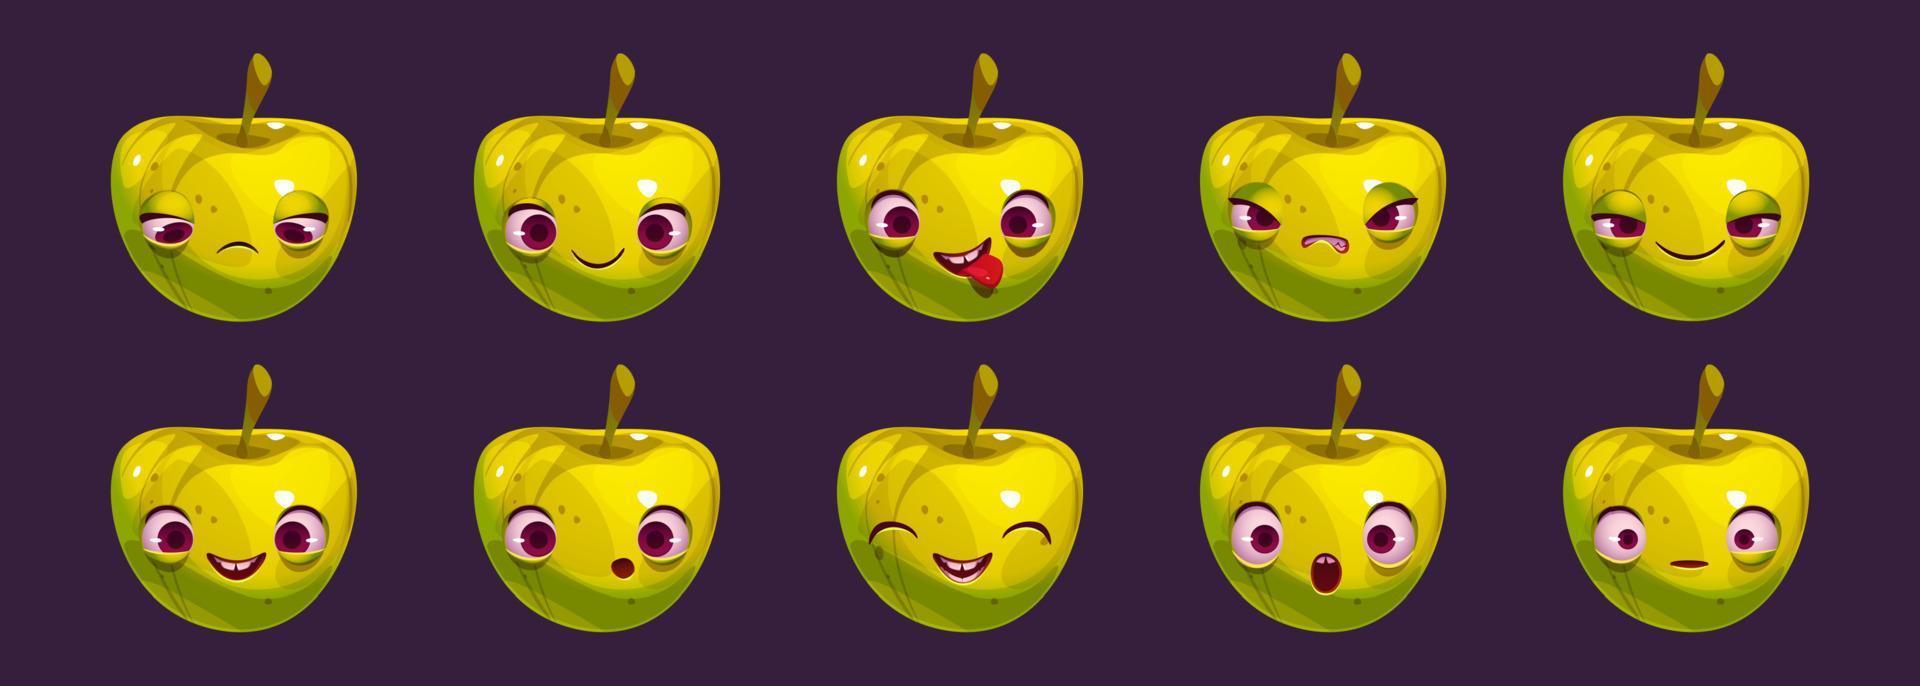 personaje de dibujos animados de manzana con diferentes emociones vector